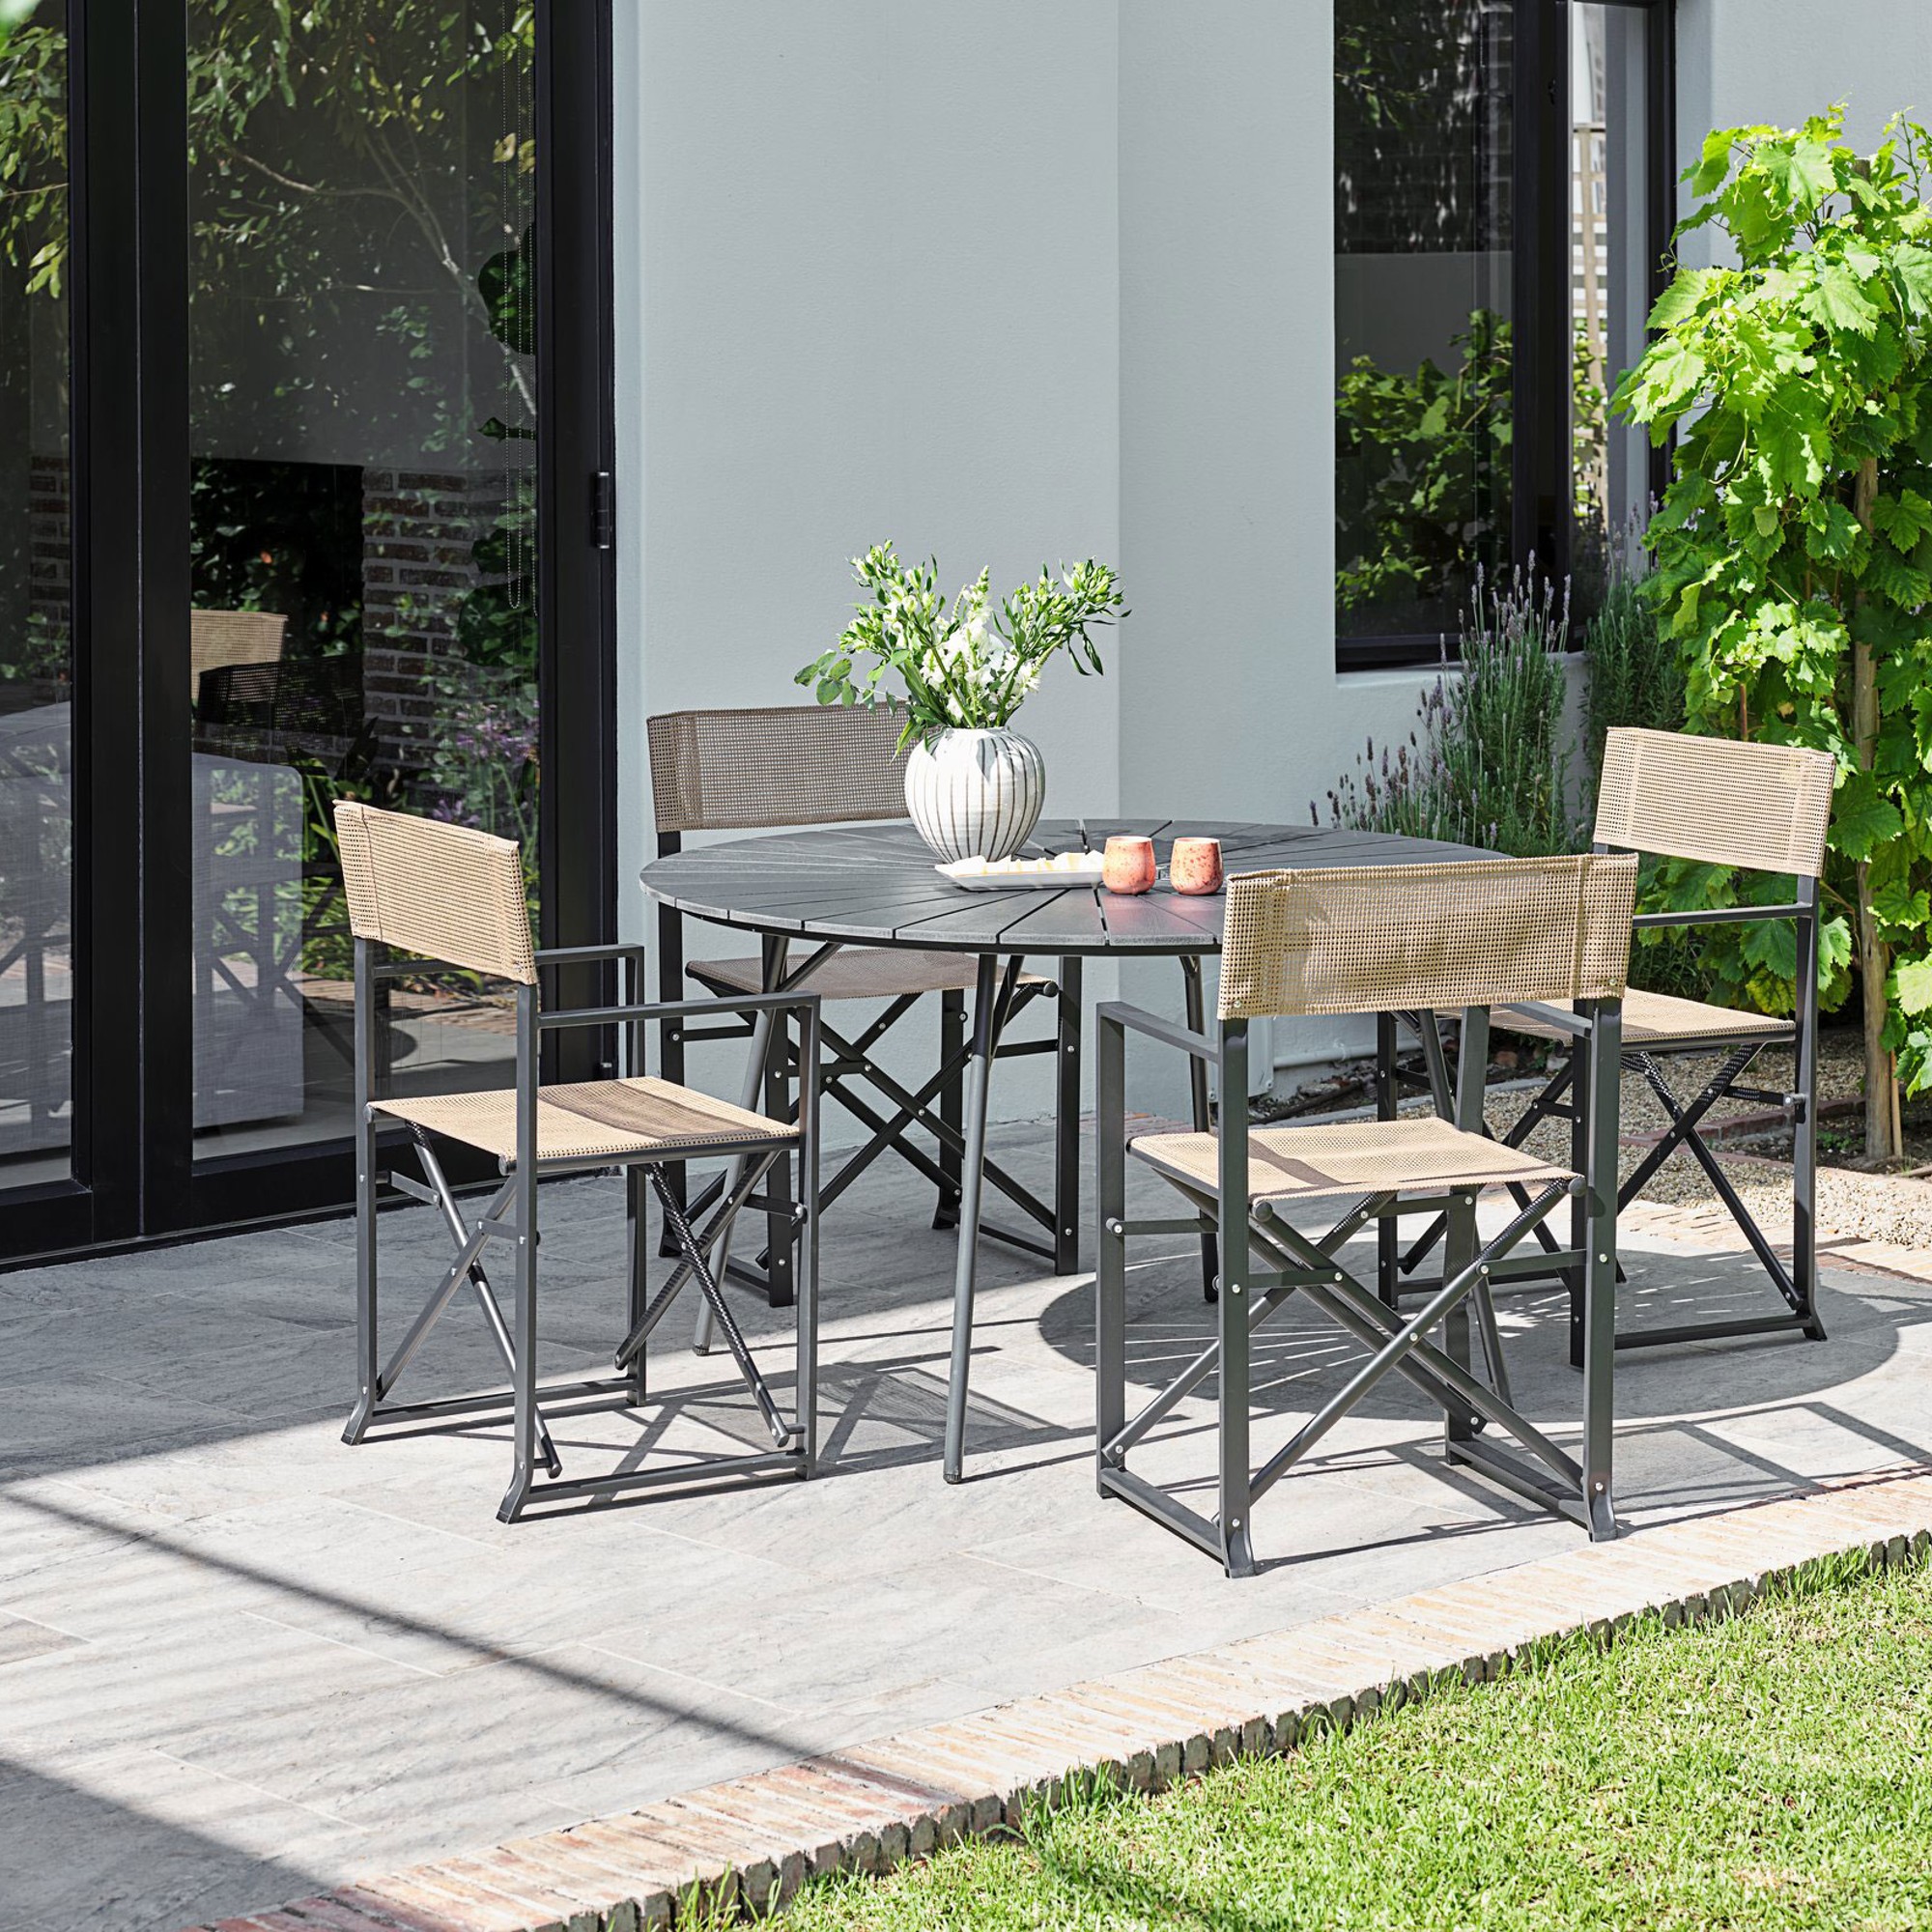 A garden furniture set on a patio